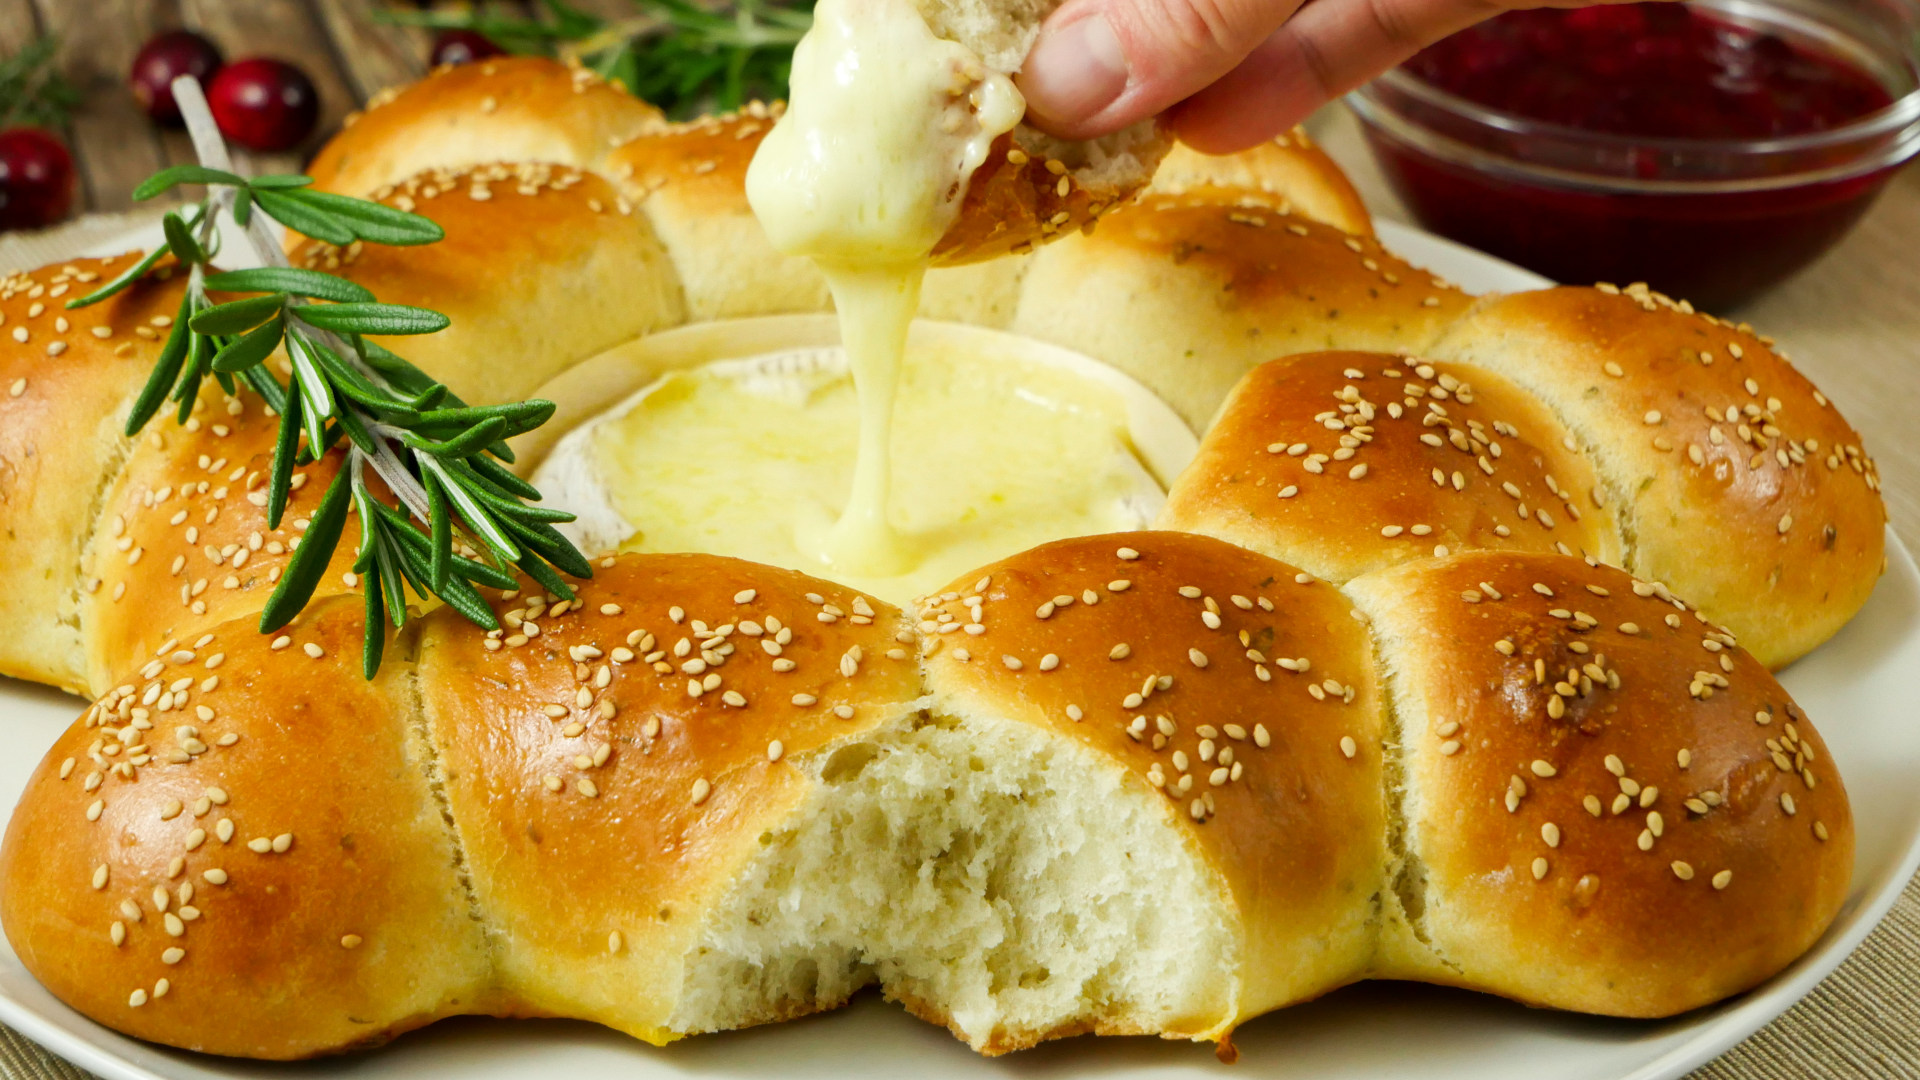 Rezept: Mediterraner Brotkranz mit Ofen-Käse| Brötchensonne mit Camembert